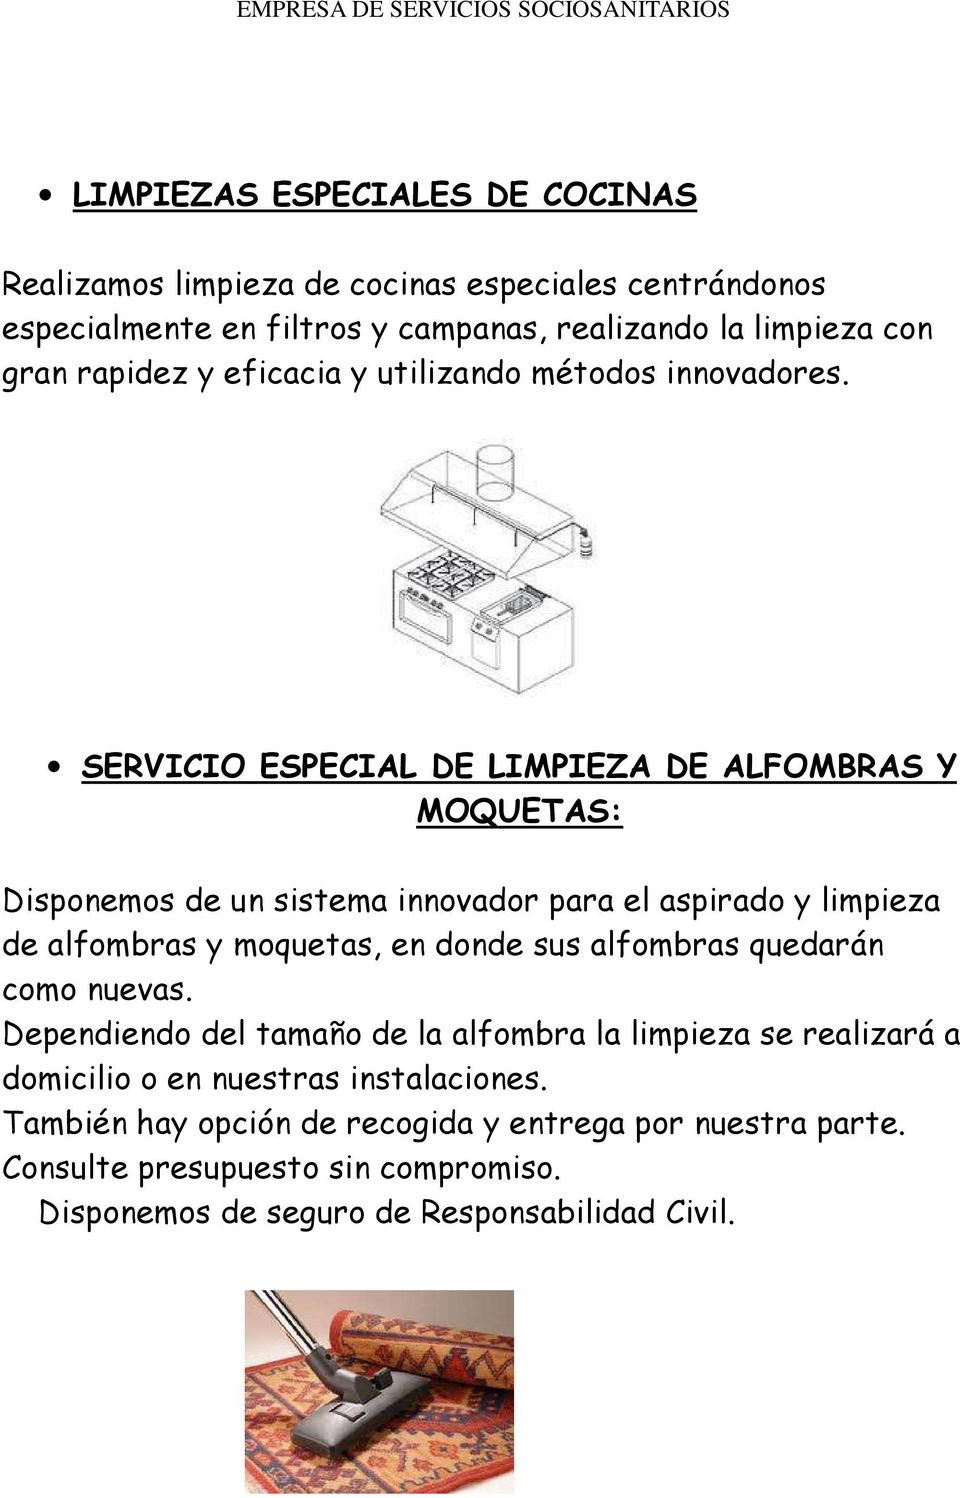 SERVICIO ESPECIAL DE LIMPIEZA DE ALFOMBRAS Y MOQUETAS: Disponemos de un sistema innovador para el aspirado y limpieza de alfombras y moquetas, en donde sus